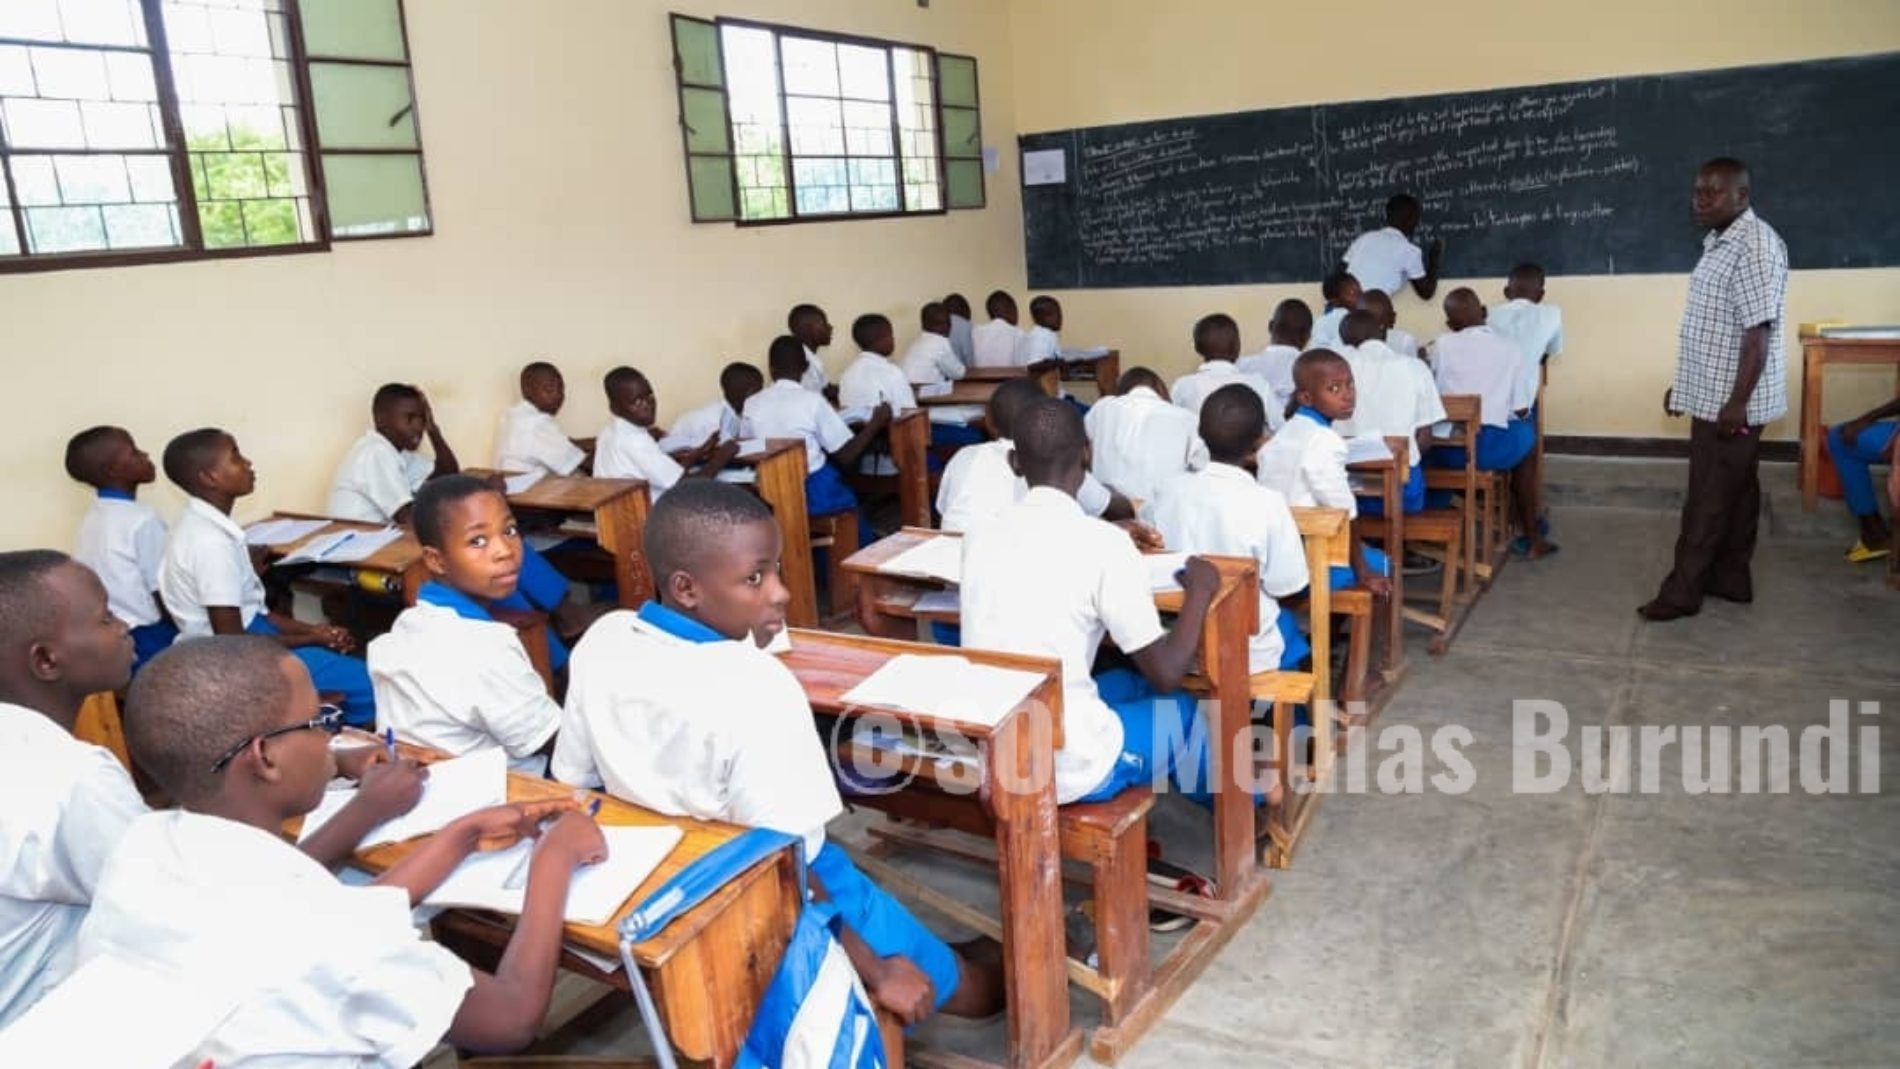 Burundi : 35% soit une note de 70/200 pour accéder à l’enseignement secondaire post fondamental